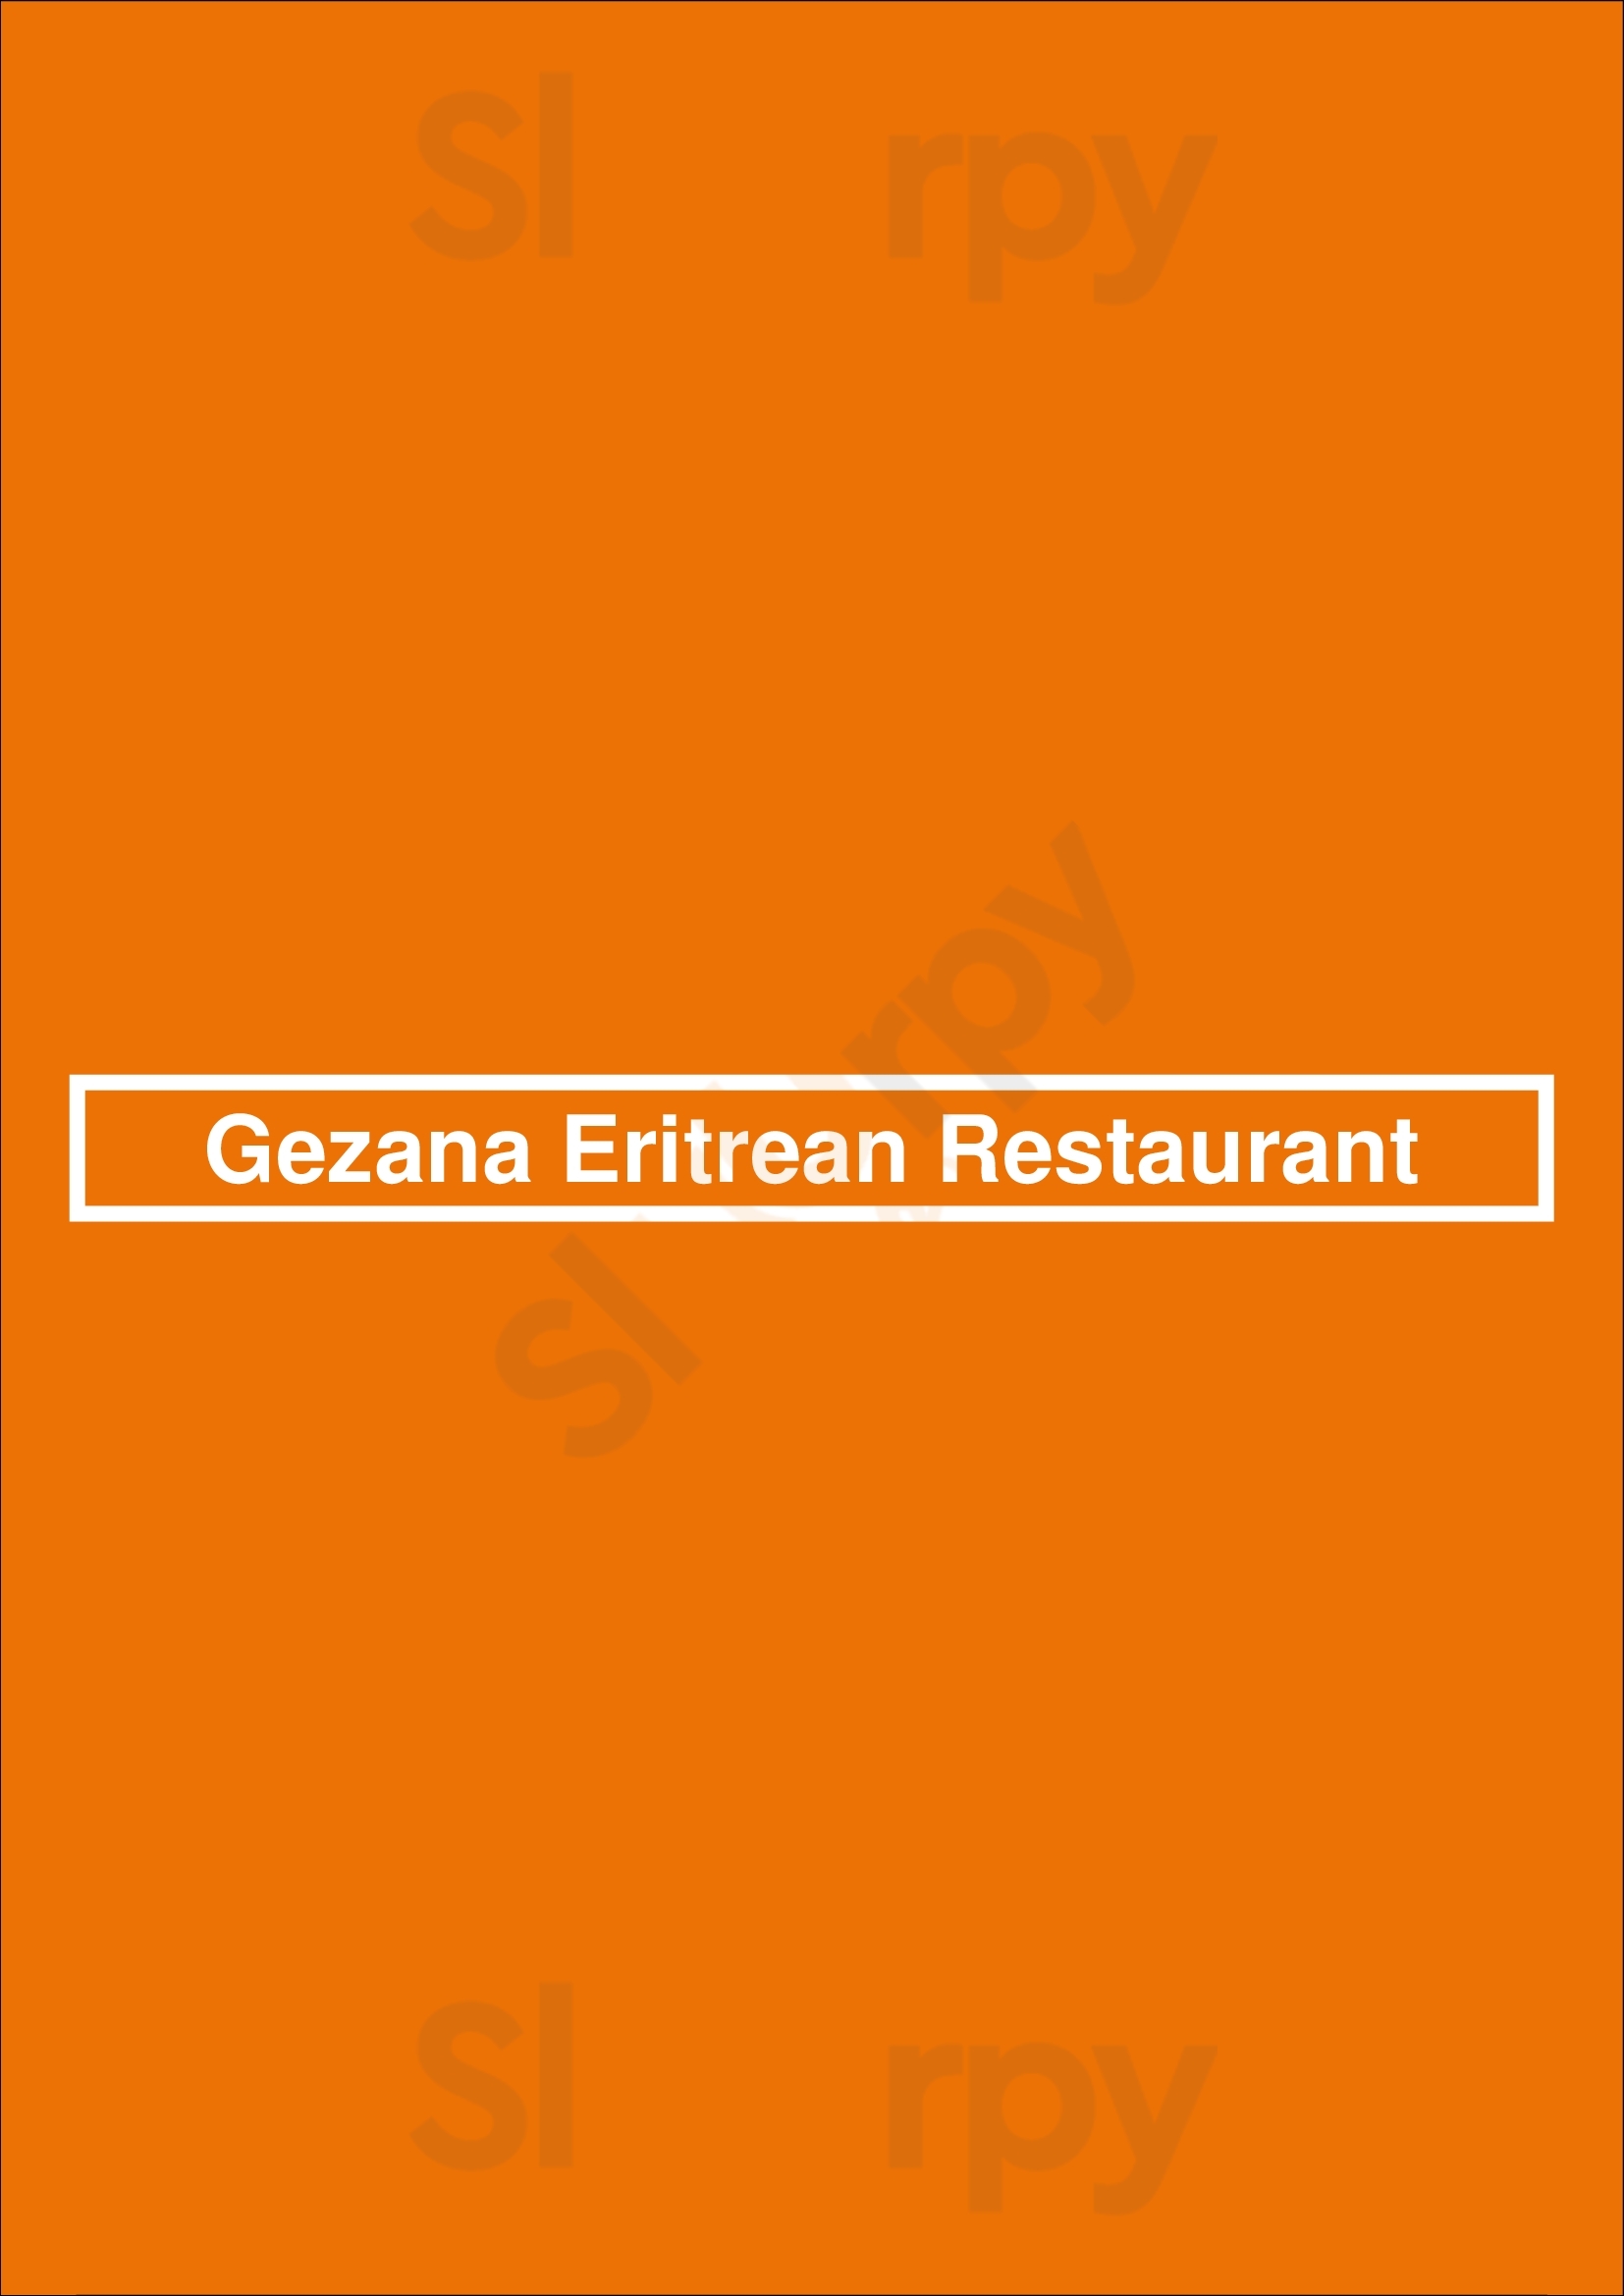 Gezana Eritrean Restaurant Eindhoven Menu - 1